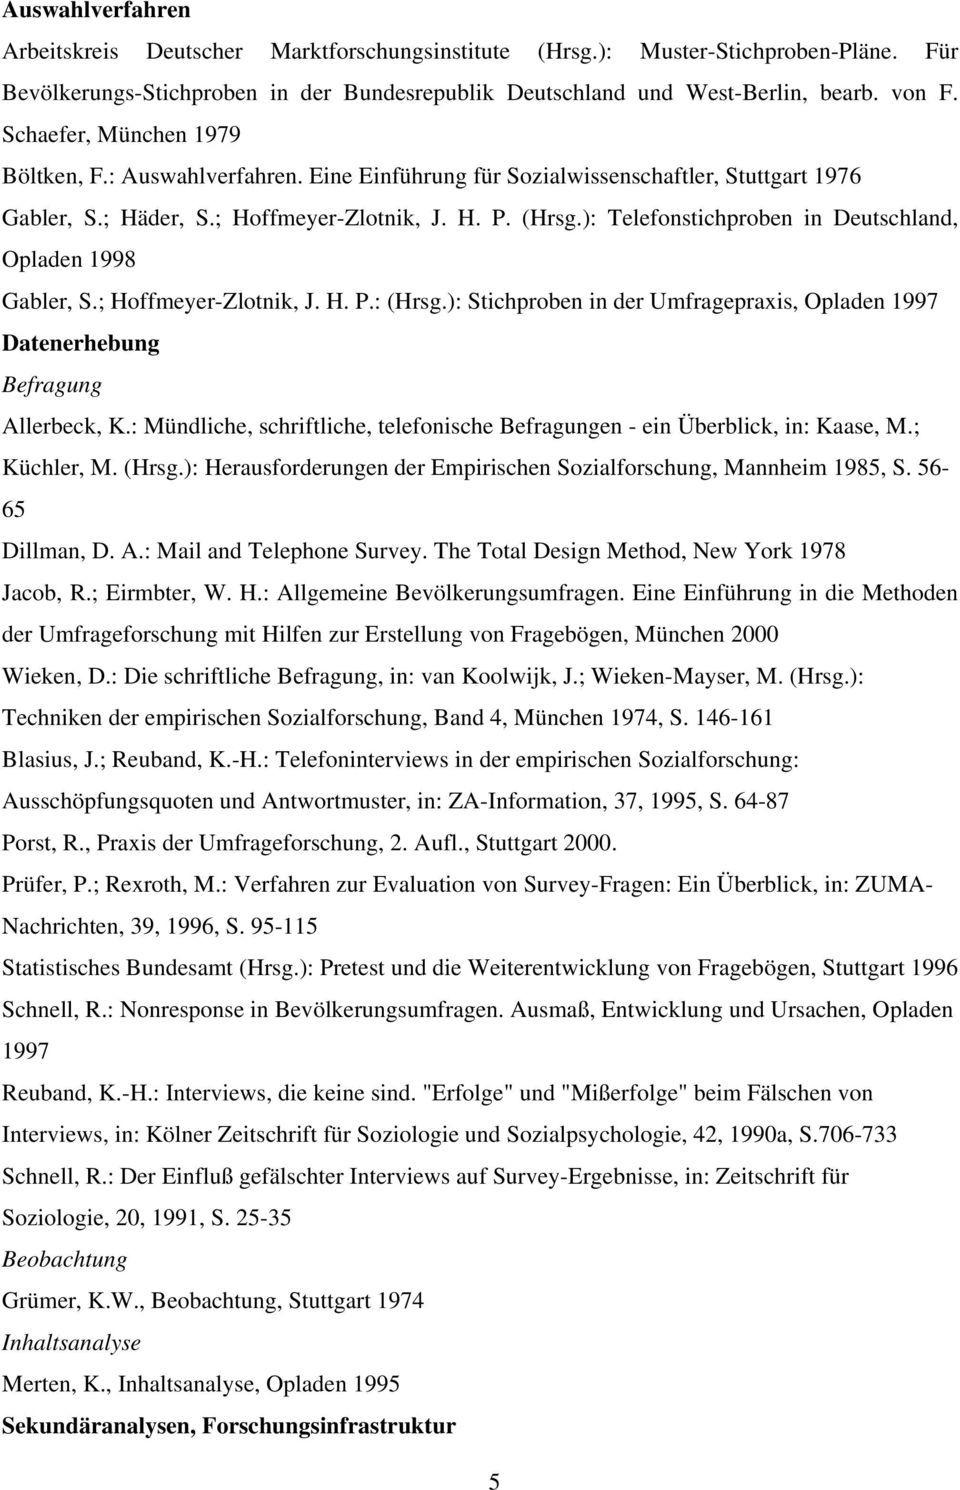 ): Telefonstichproben in Deutschland, Opladen 1998 Gabler, S.; Hoffmeyer-Zlotnik, J. H. P.: (Hrsg.): Stichproben in der Umfragepraxis, Opladen 1997 Datenerhebung Befragung Allerbeck, K.